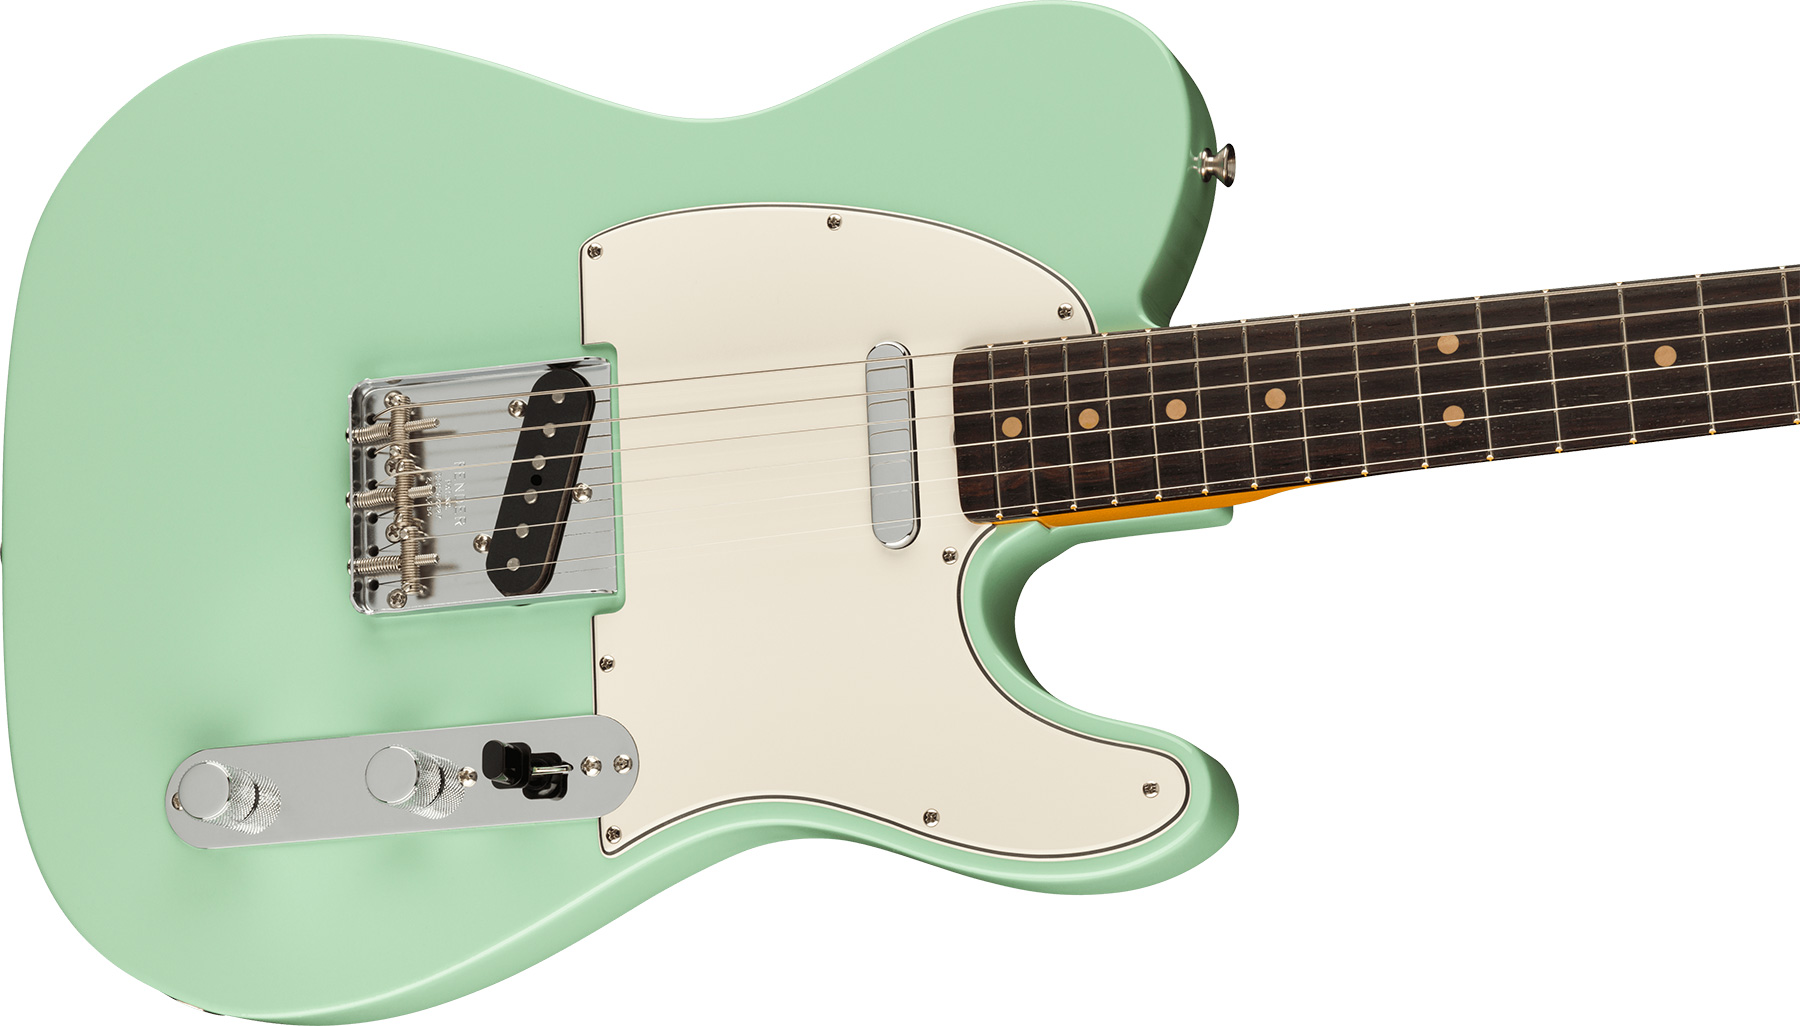 Fender Tele 1963 American Vintage Ii Usa 2s Ht Rw - Surf Green - Guitarra eléctrica con forma de tel - Variation 2